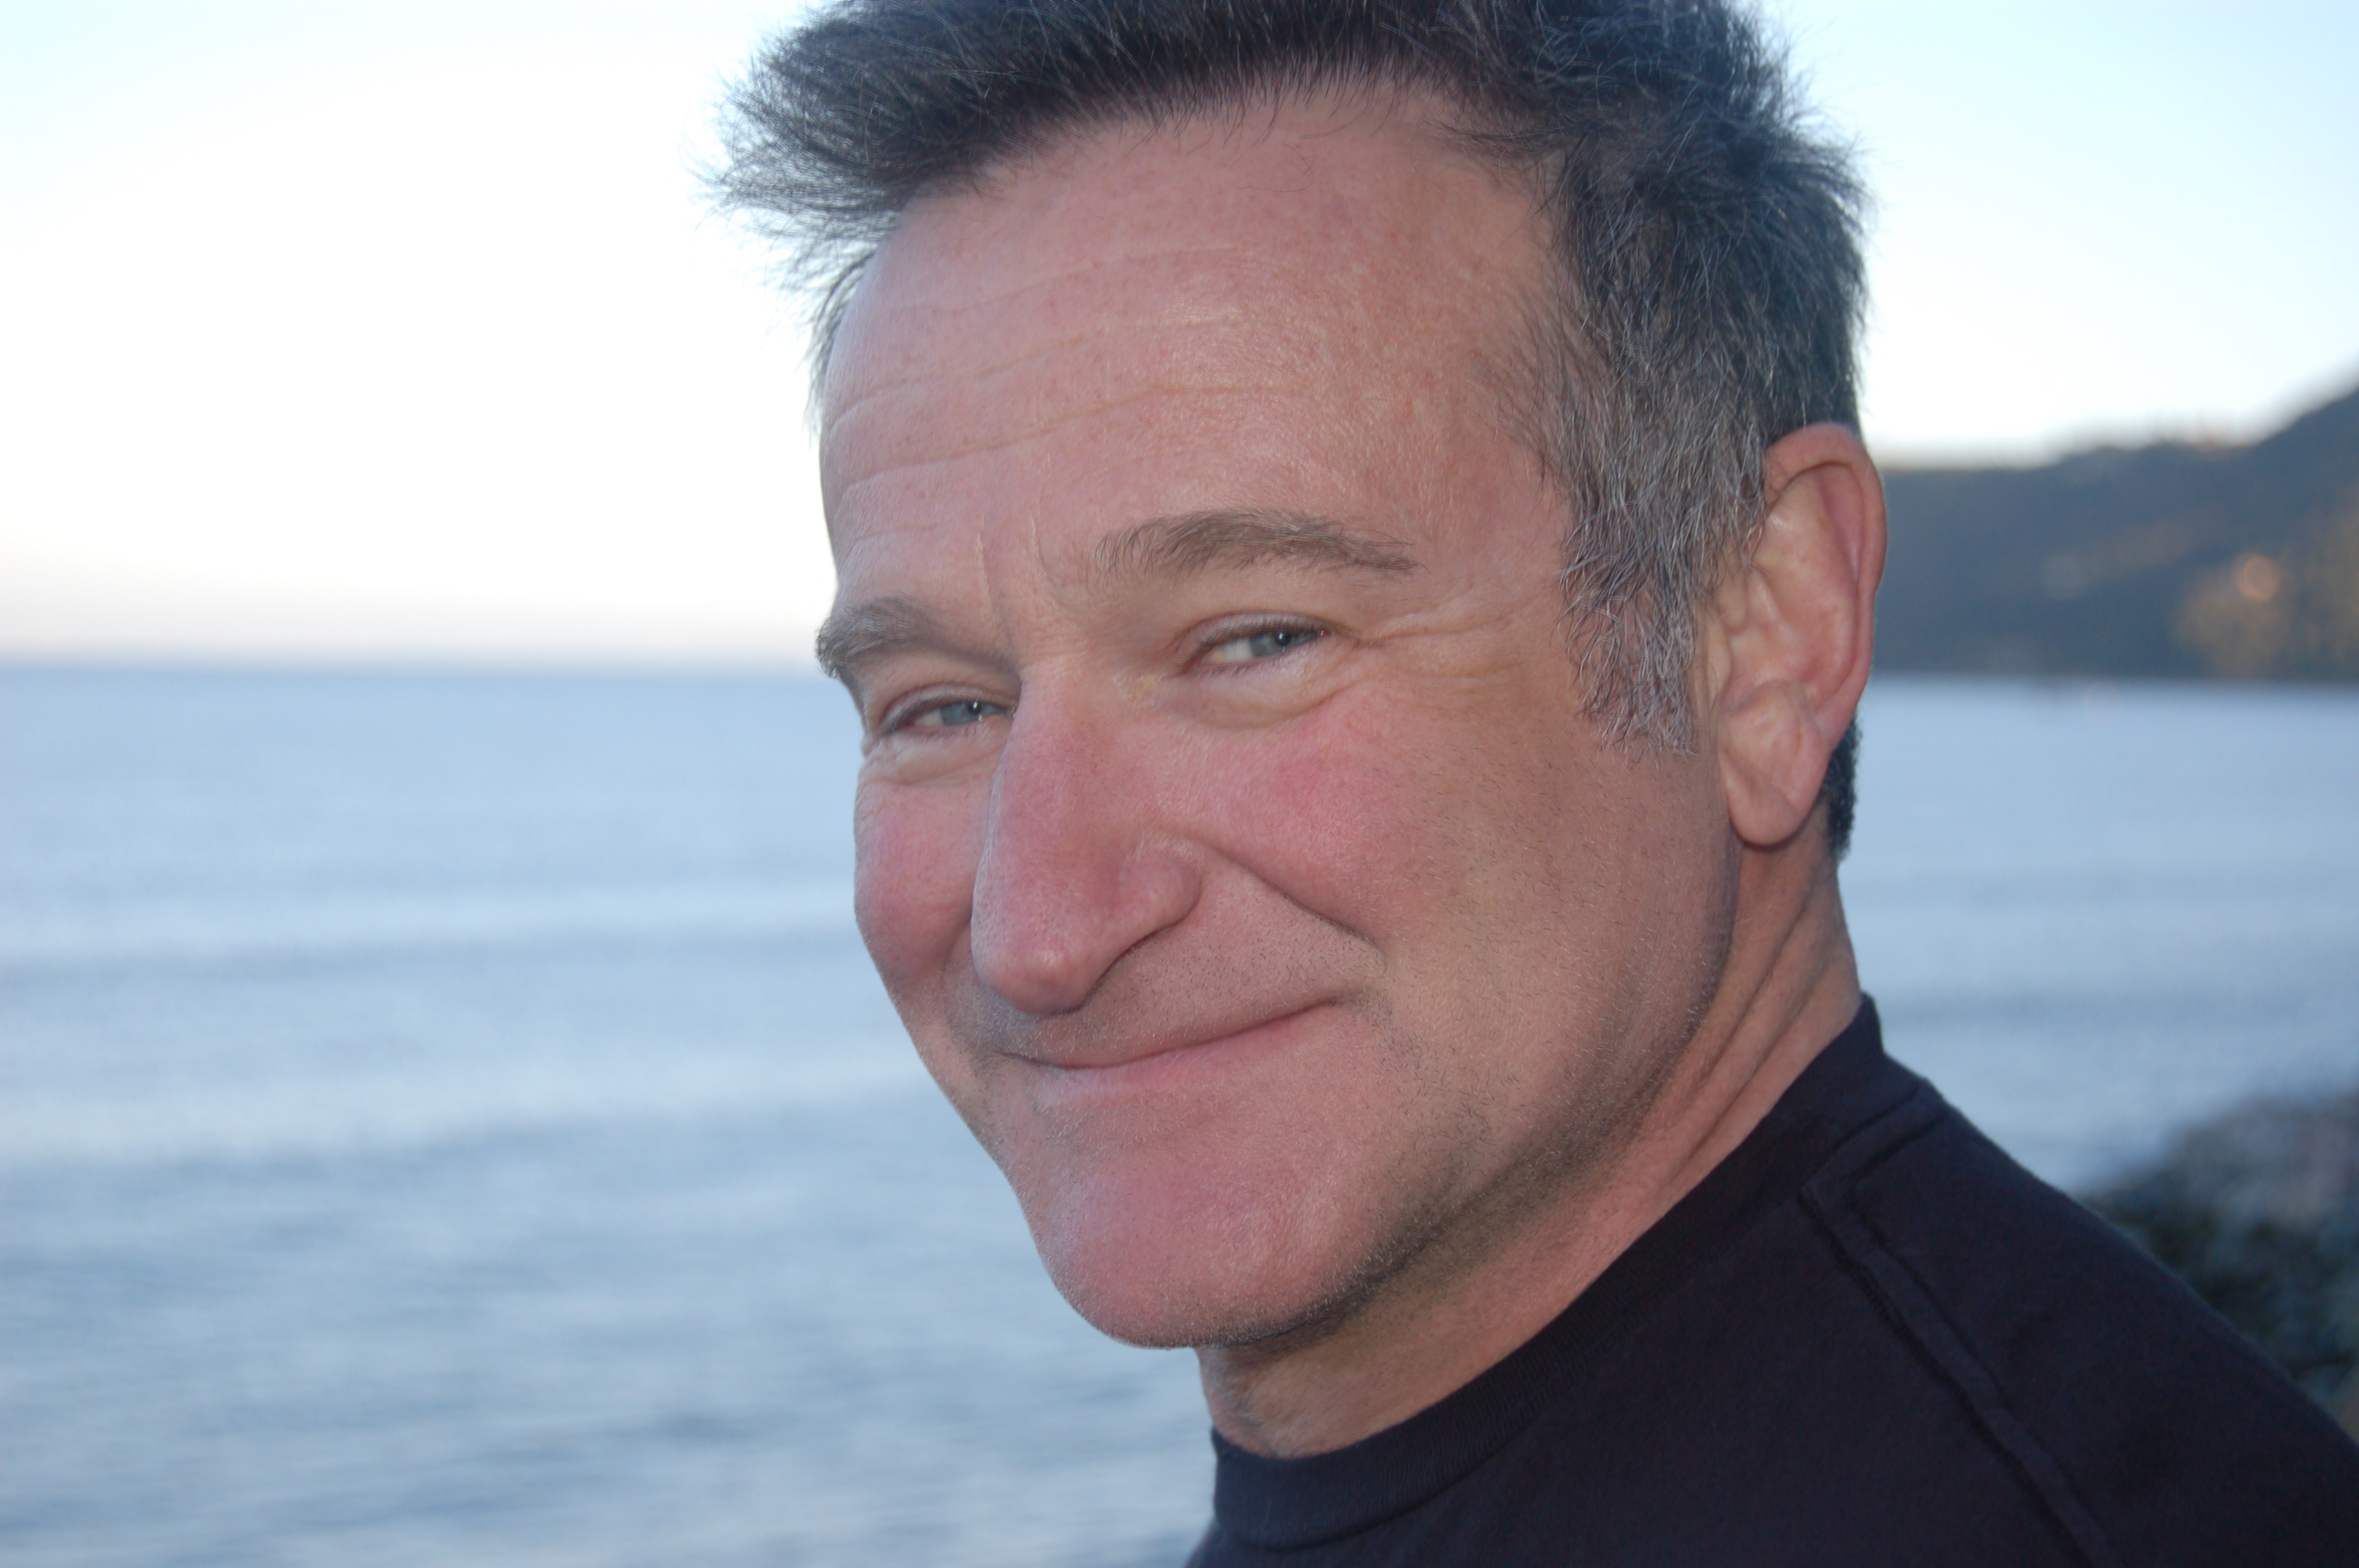 São divulgadas imagens de Robin Williams dublando o Gênio, de “Aladdin”;  assista